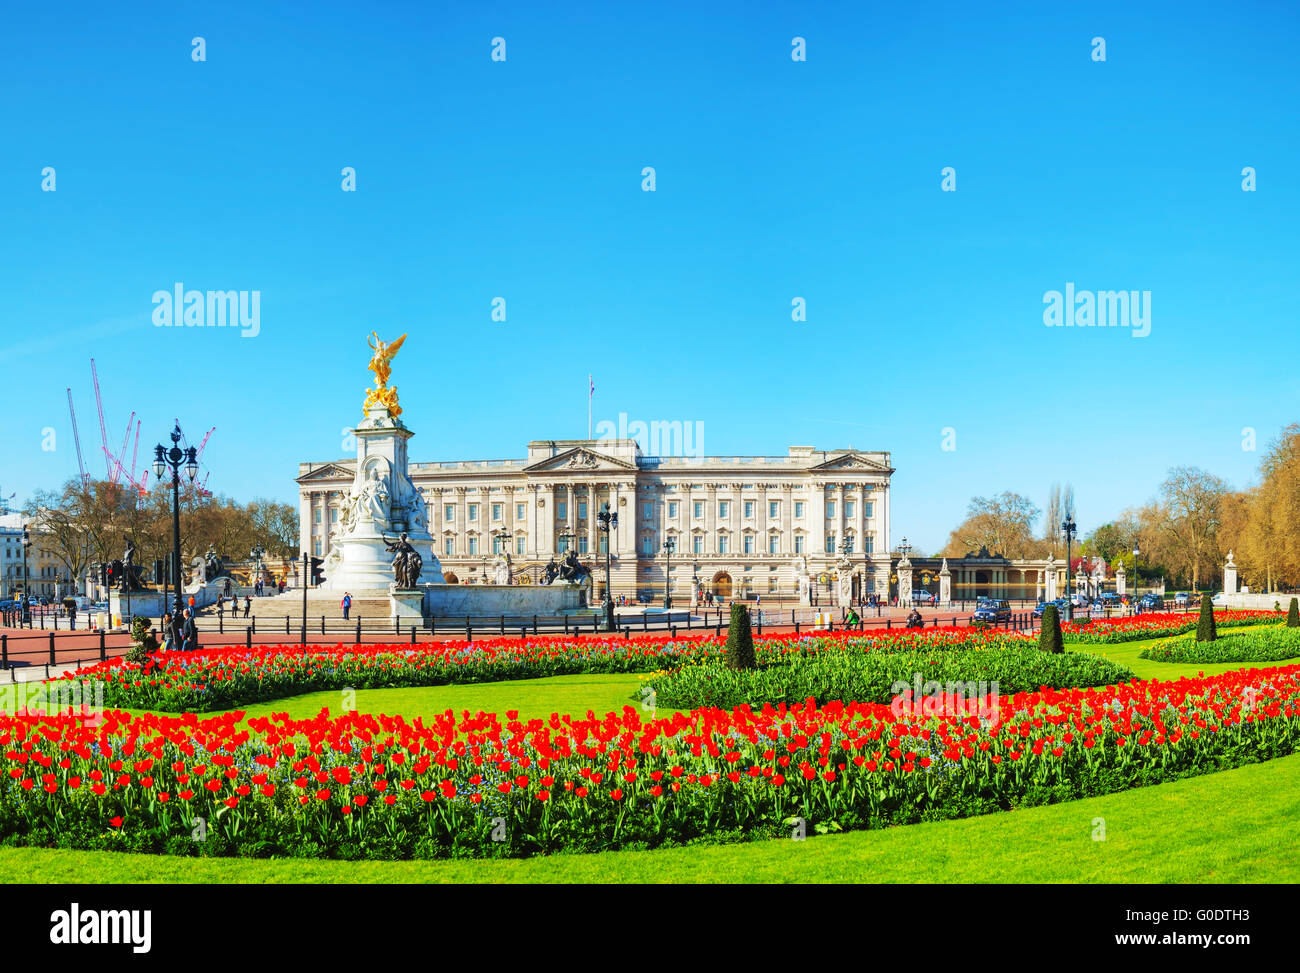 Buckingham palace vista panoramica di Londra, Regno Unito Foto Stock